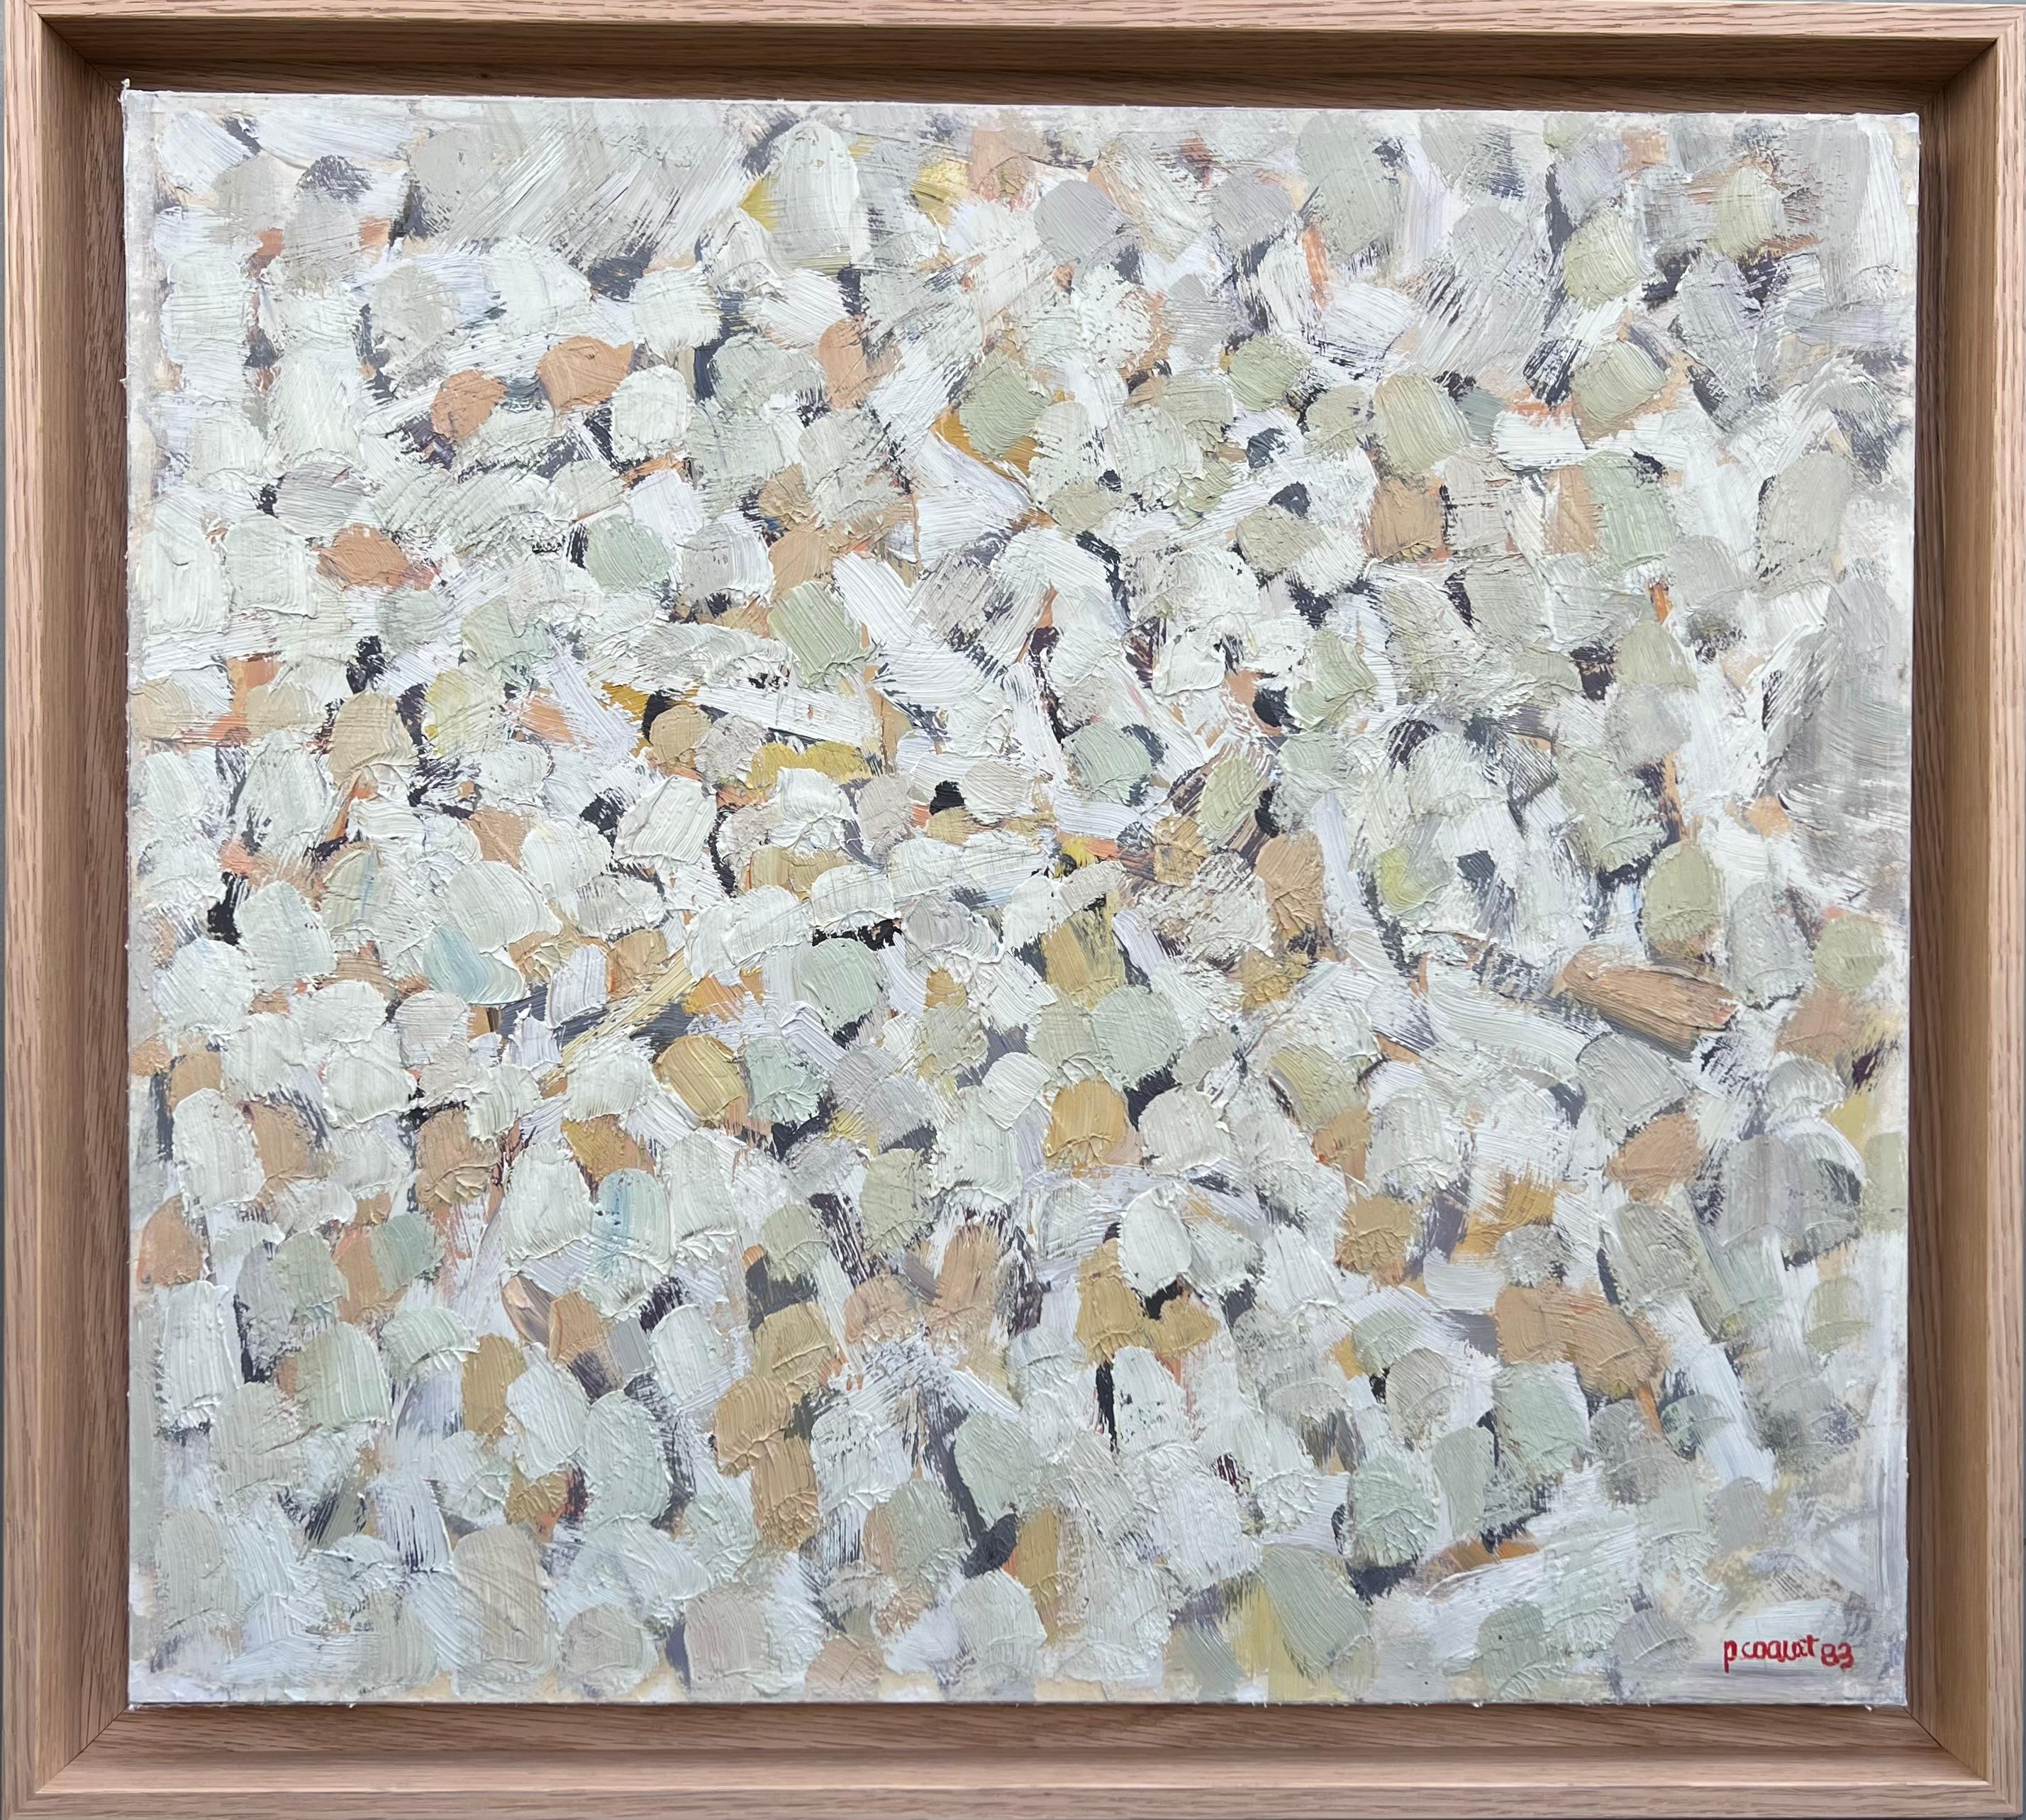 Pierre Coquet - Abstrakte Komposition in weißen Farbtönen
Referenznummer A202
Gerahmt mit einem natürlichen Eichenholzrahmen
40 x 45 cm (inklusive Rahmen 45 x 50 cm)
Dieses Werk ist mit Öl auf eine Platte gemalt.  Sie ist unterzeichnet  und datiert